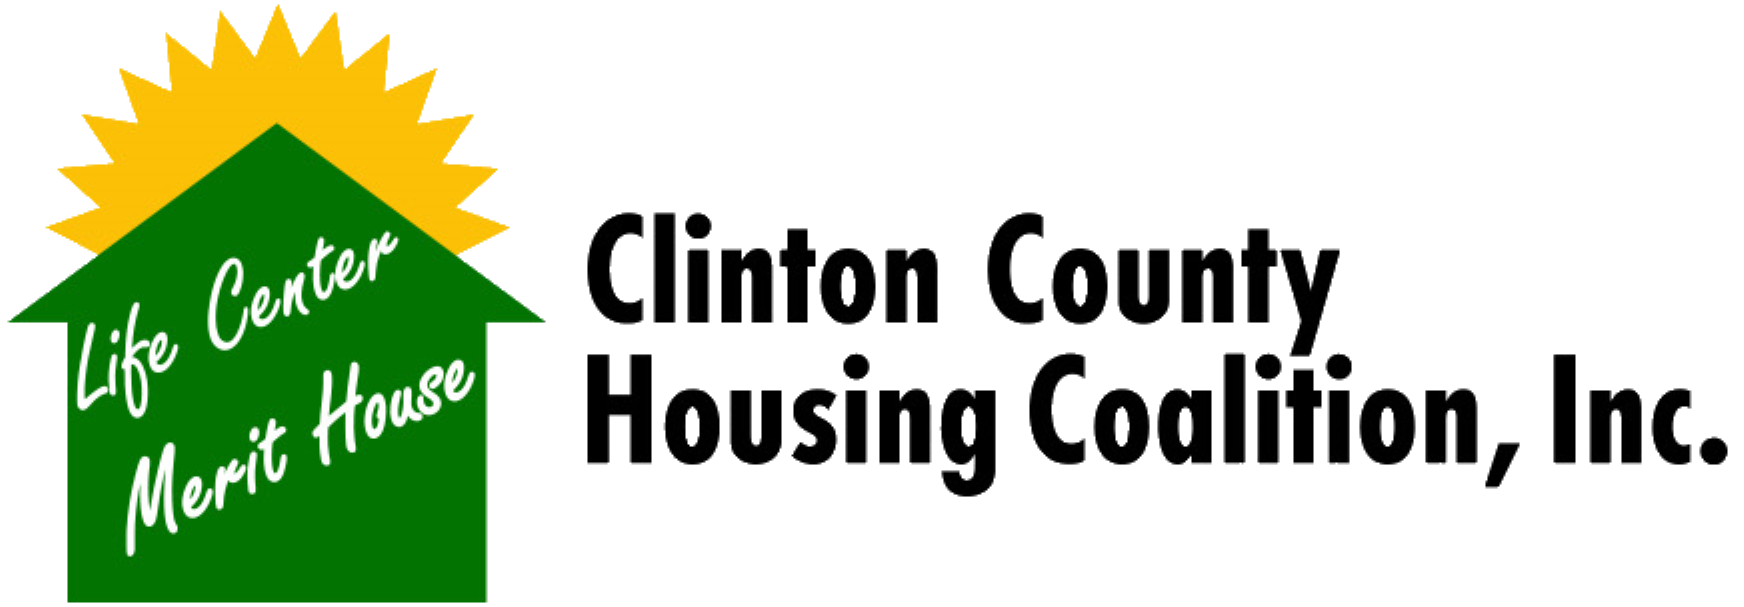 Clinton County Housing Coalition